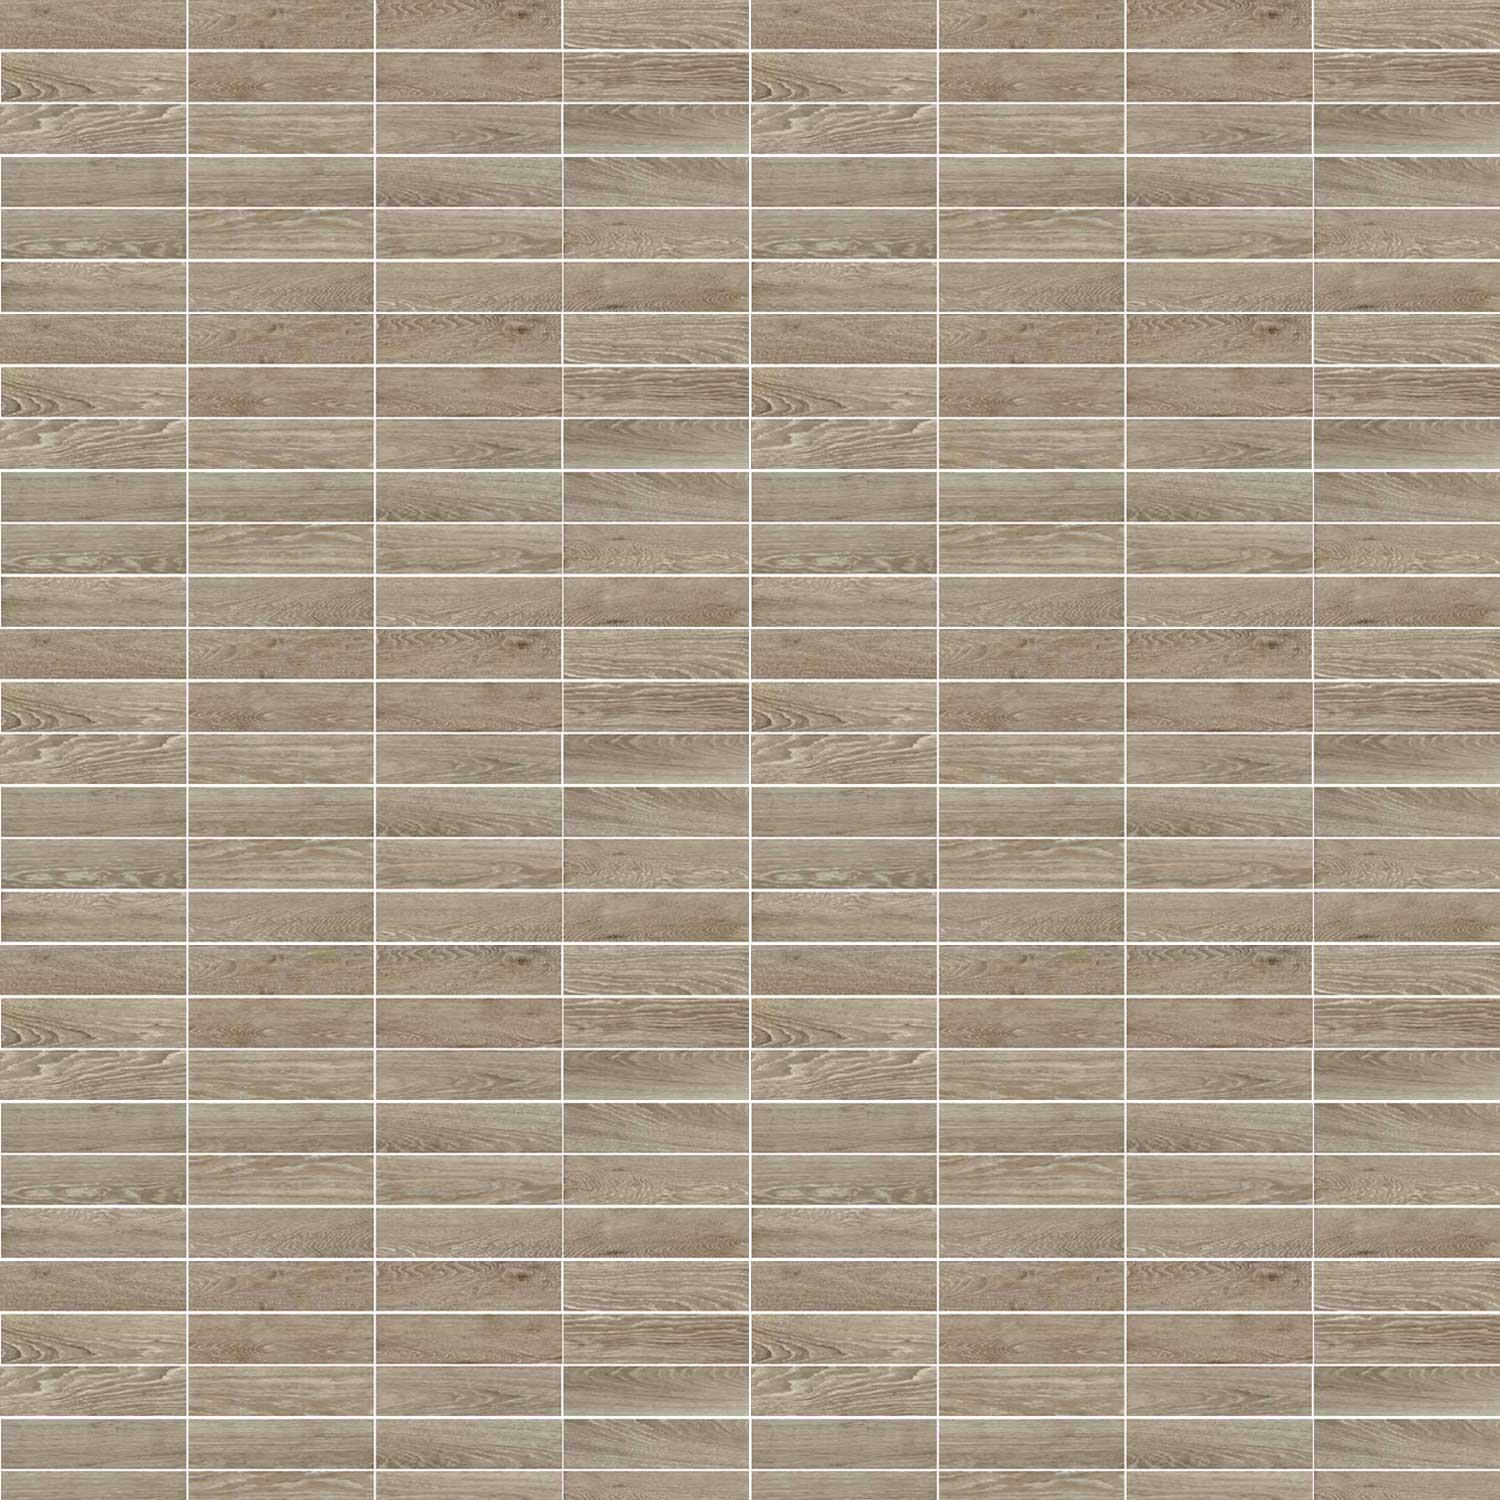 Parquet Taupe Porcelain Plank Tile Wood Effect Walls floor 280 x 70mm